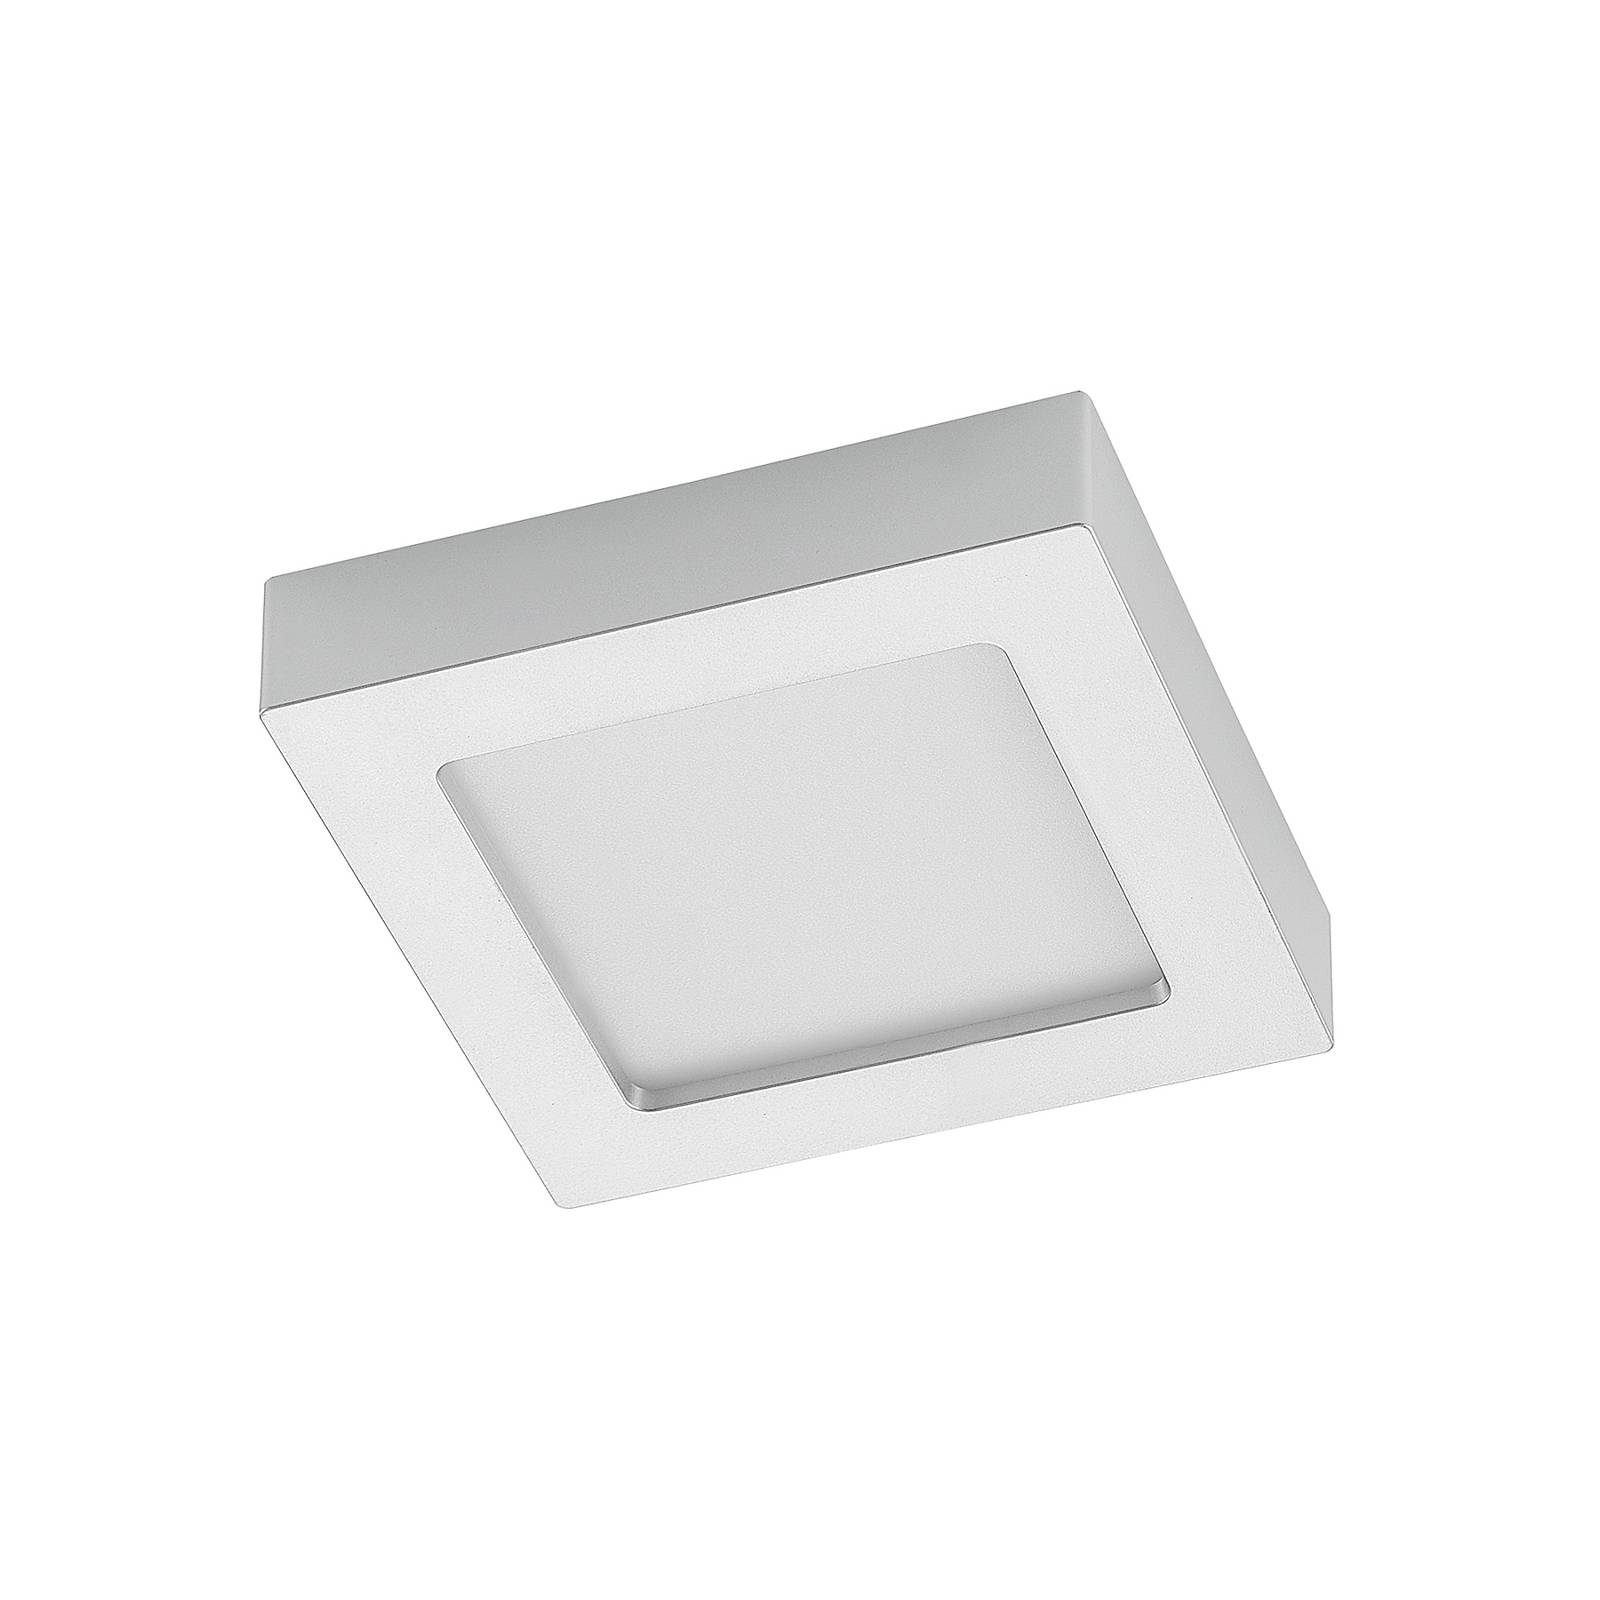 Image of Prios Alette plafonnier LED, argenté, 17,2 cm 4251911707663